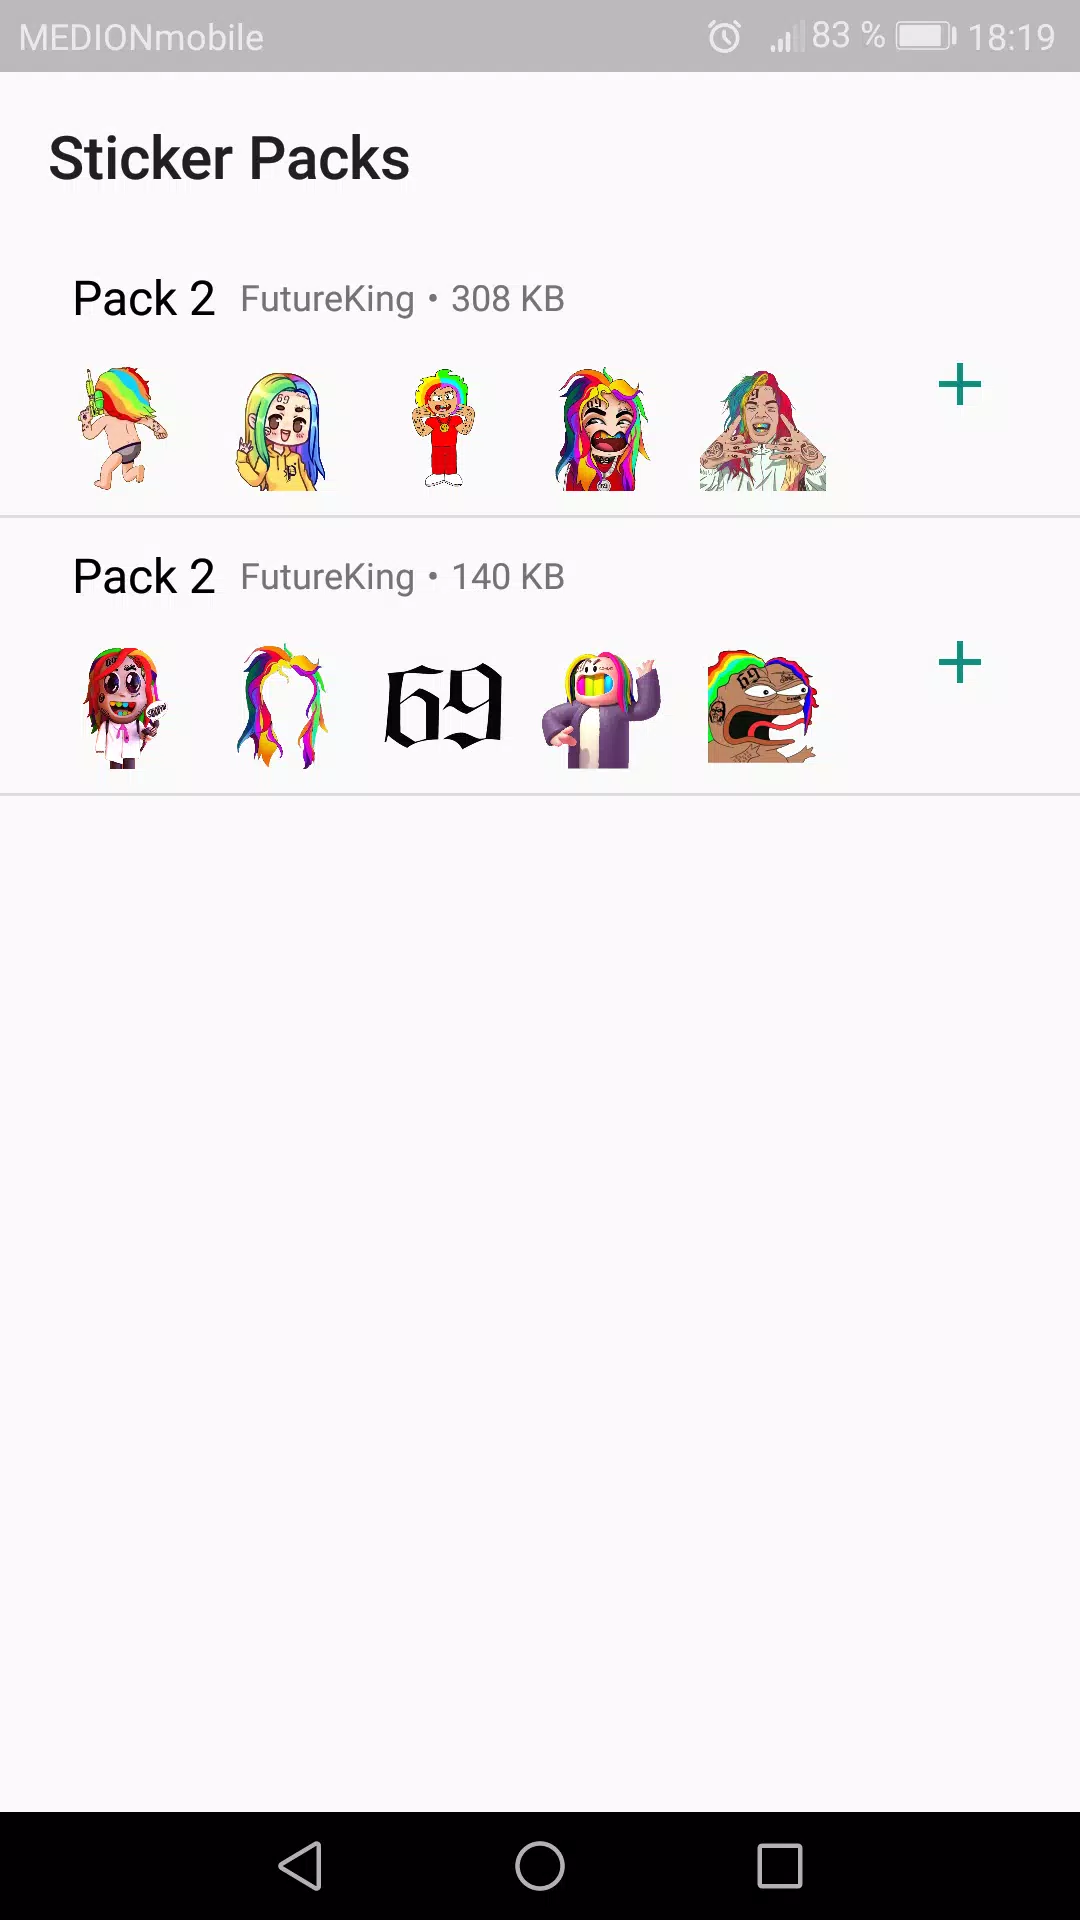 6ix9ine Stickers for WhatsApp APK für Android herunterladen